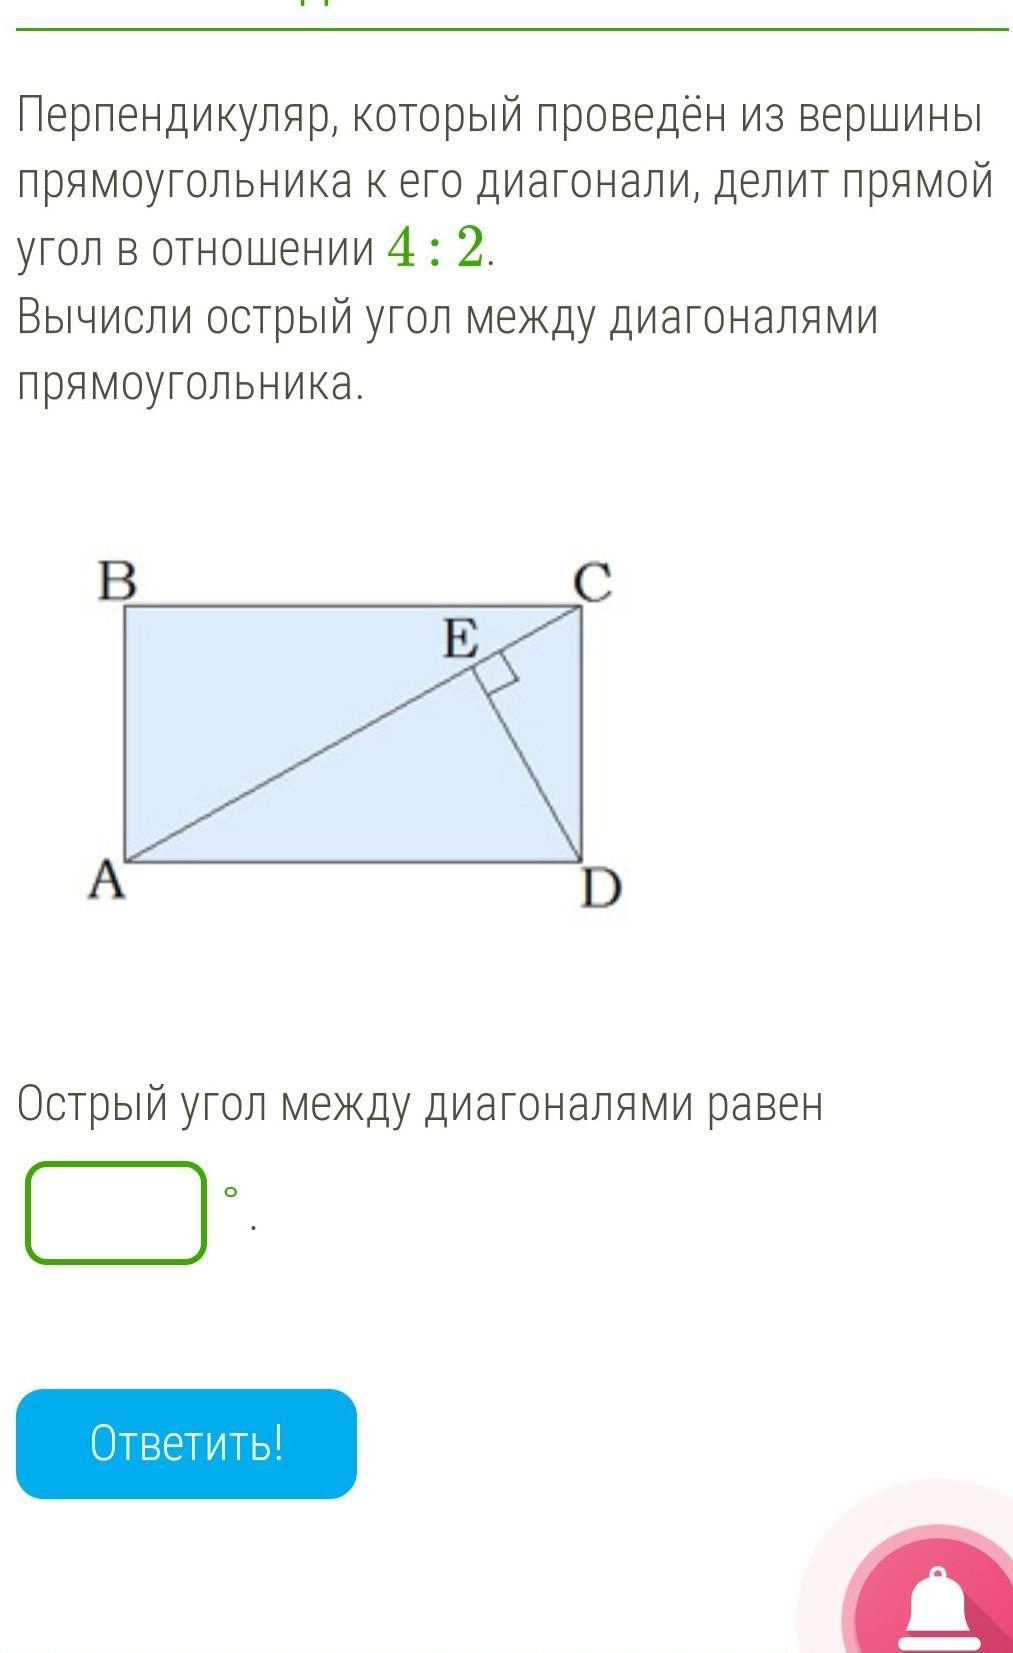 Перпендикуляр проведенный к диагонали прямоугольника